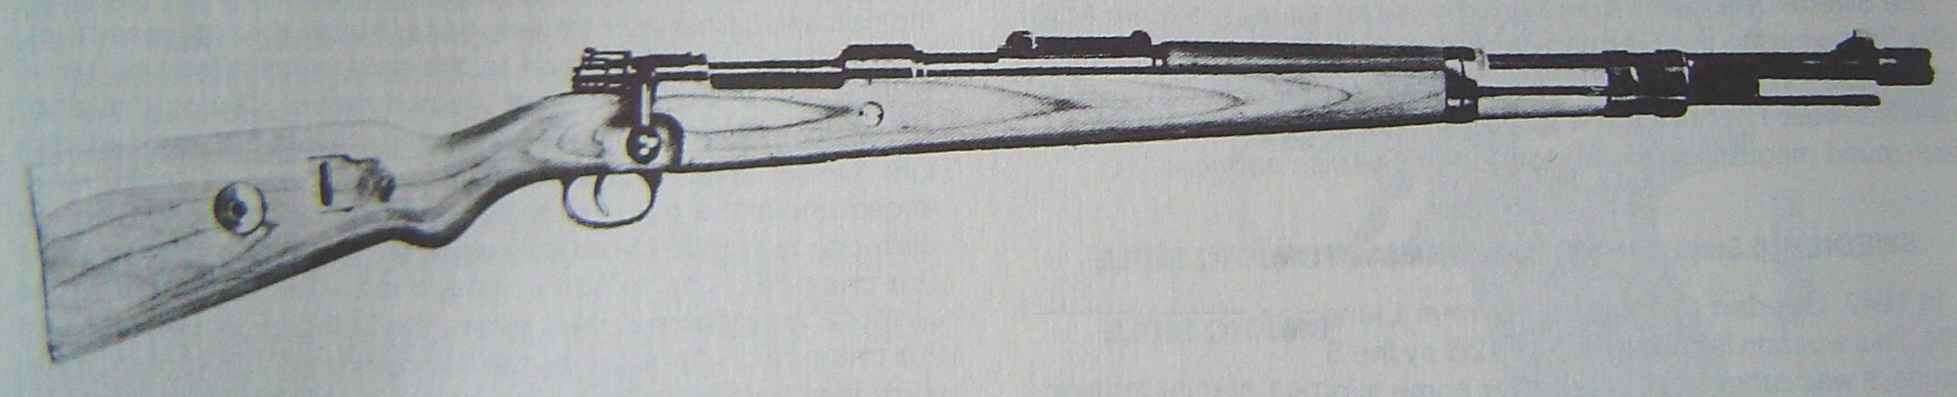 Mauser m/40 (Sude)